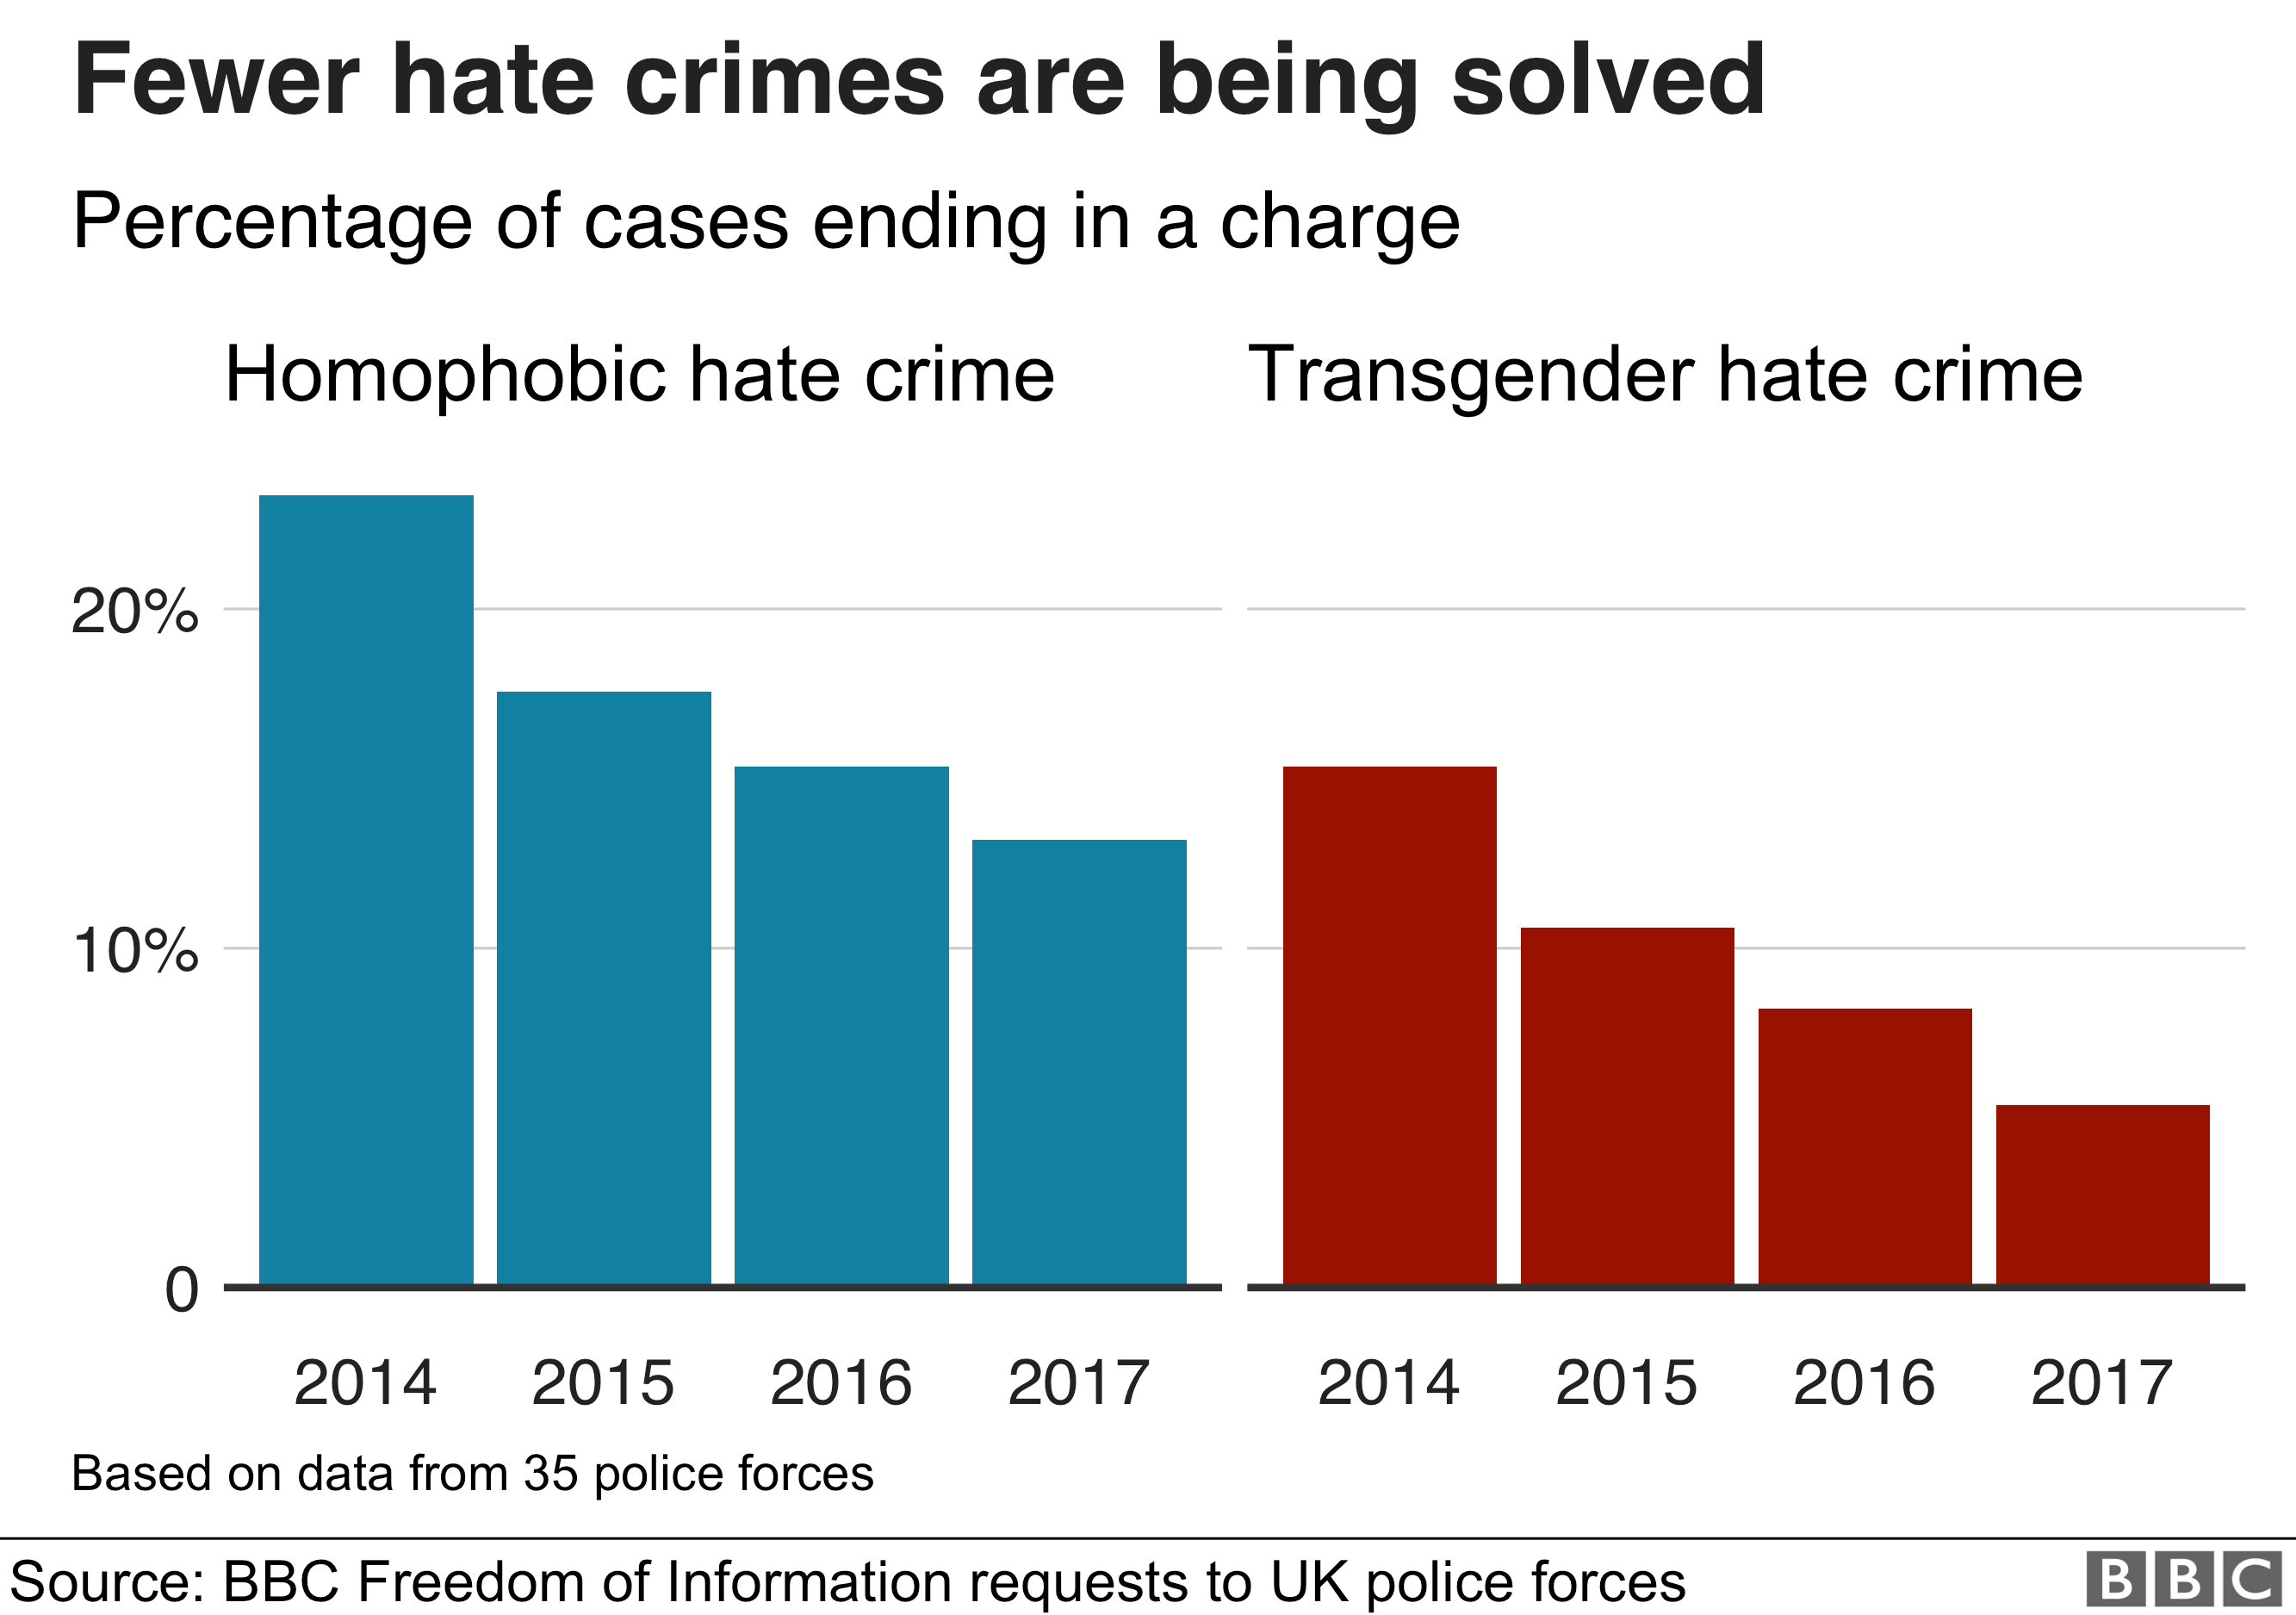 Меньше преступлений на почве ненависти раскрываются. Процент как преступлений на почве гомофобии, так и трансгендерной ненависти заканчивается без предъявления обвинения